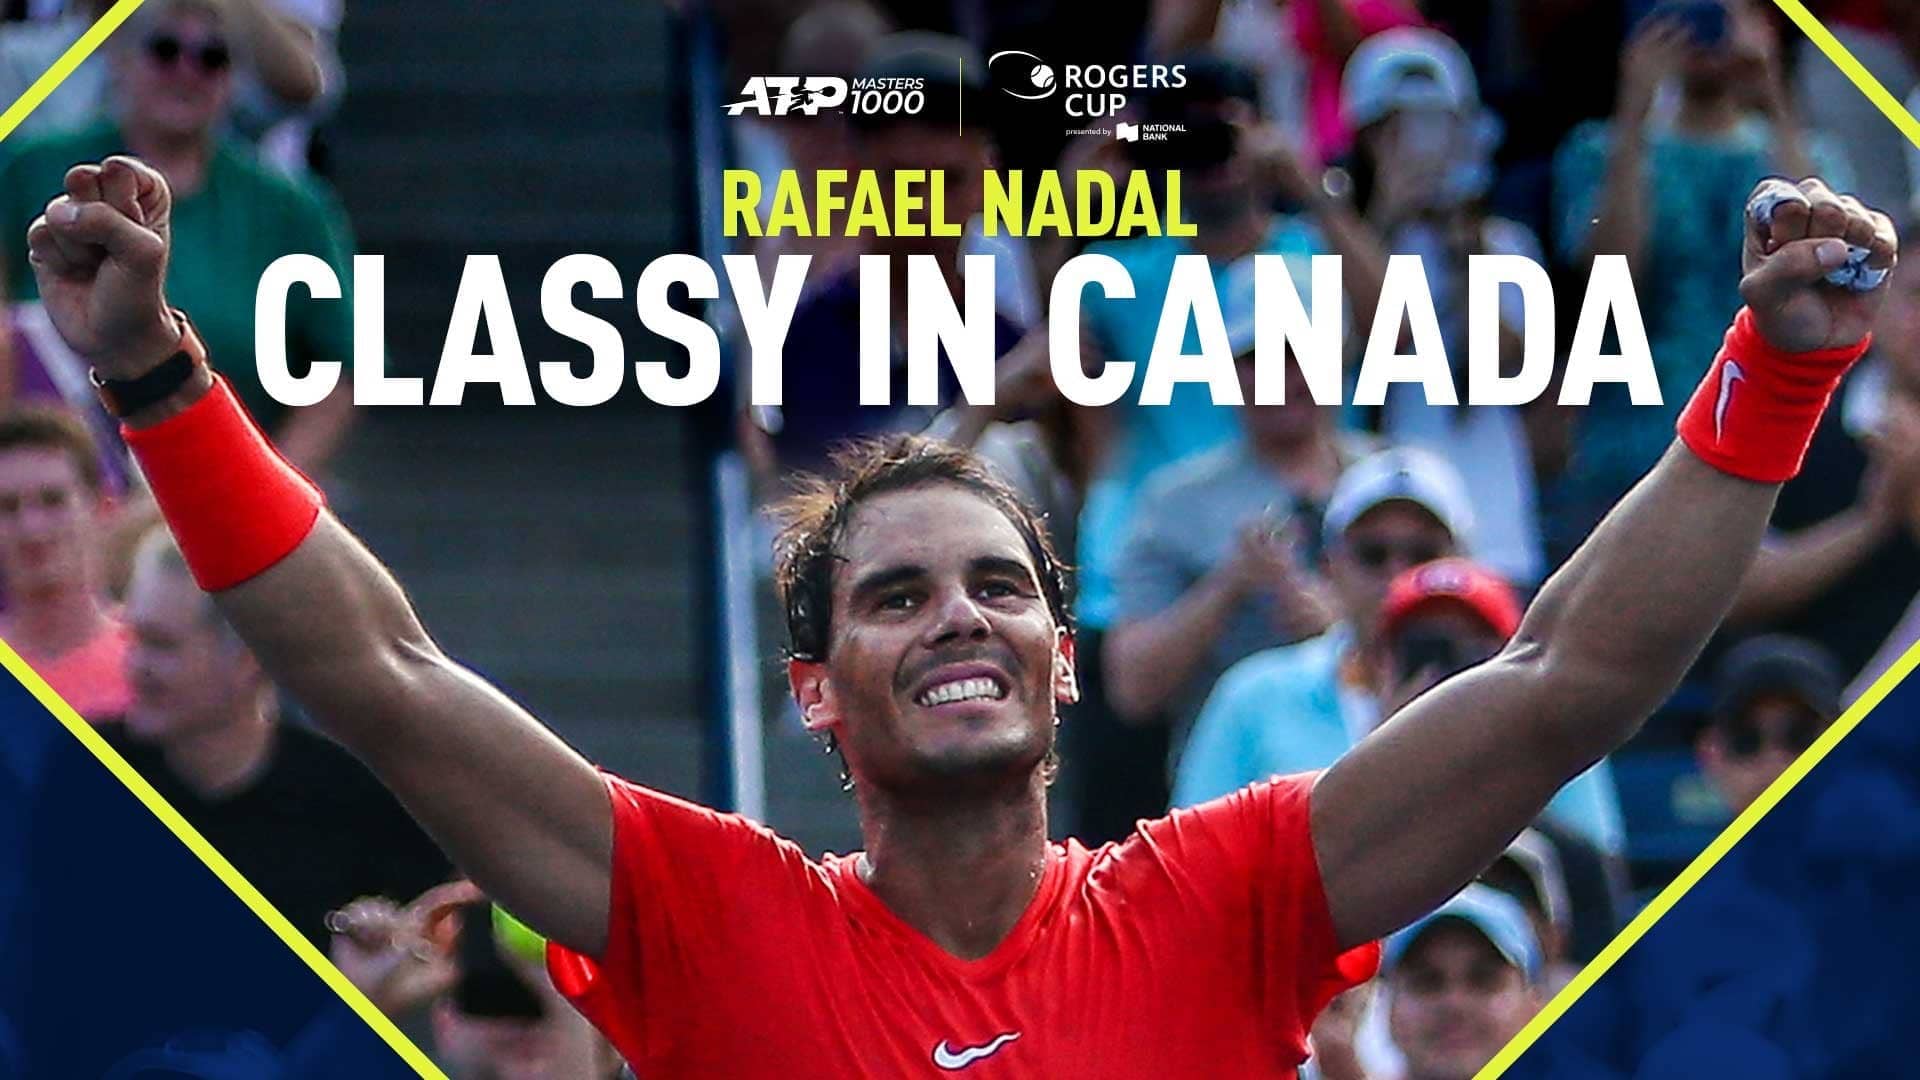 Nadal celebrates